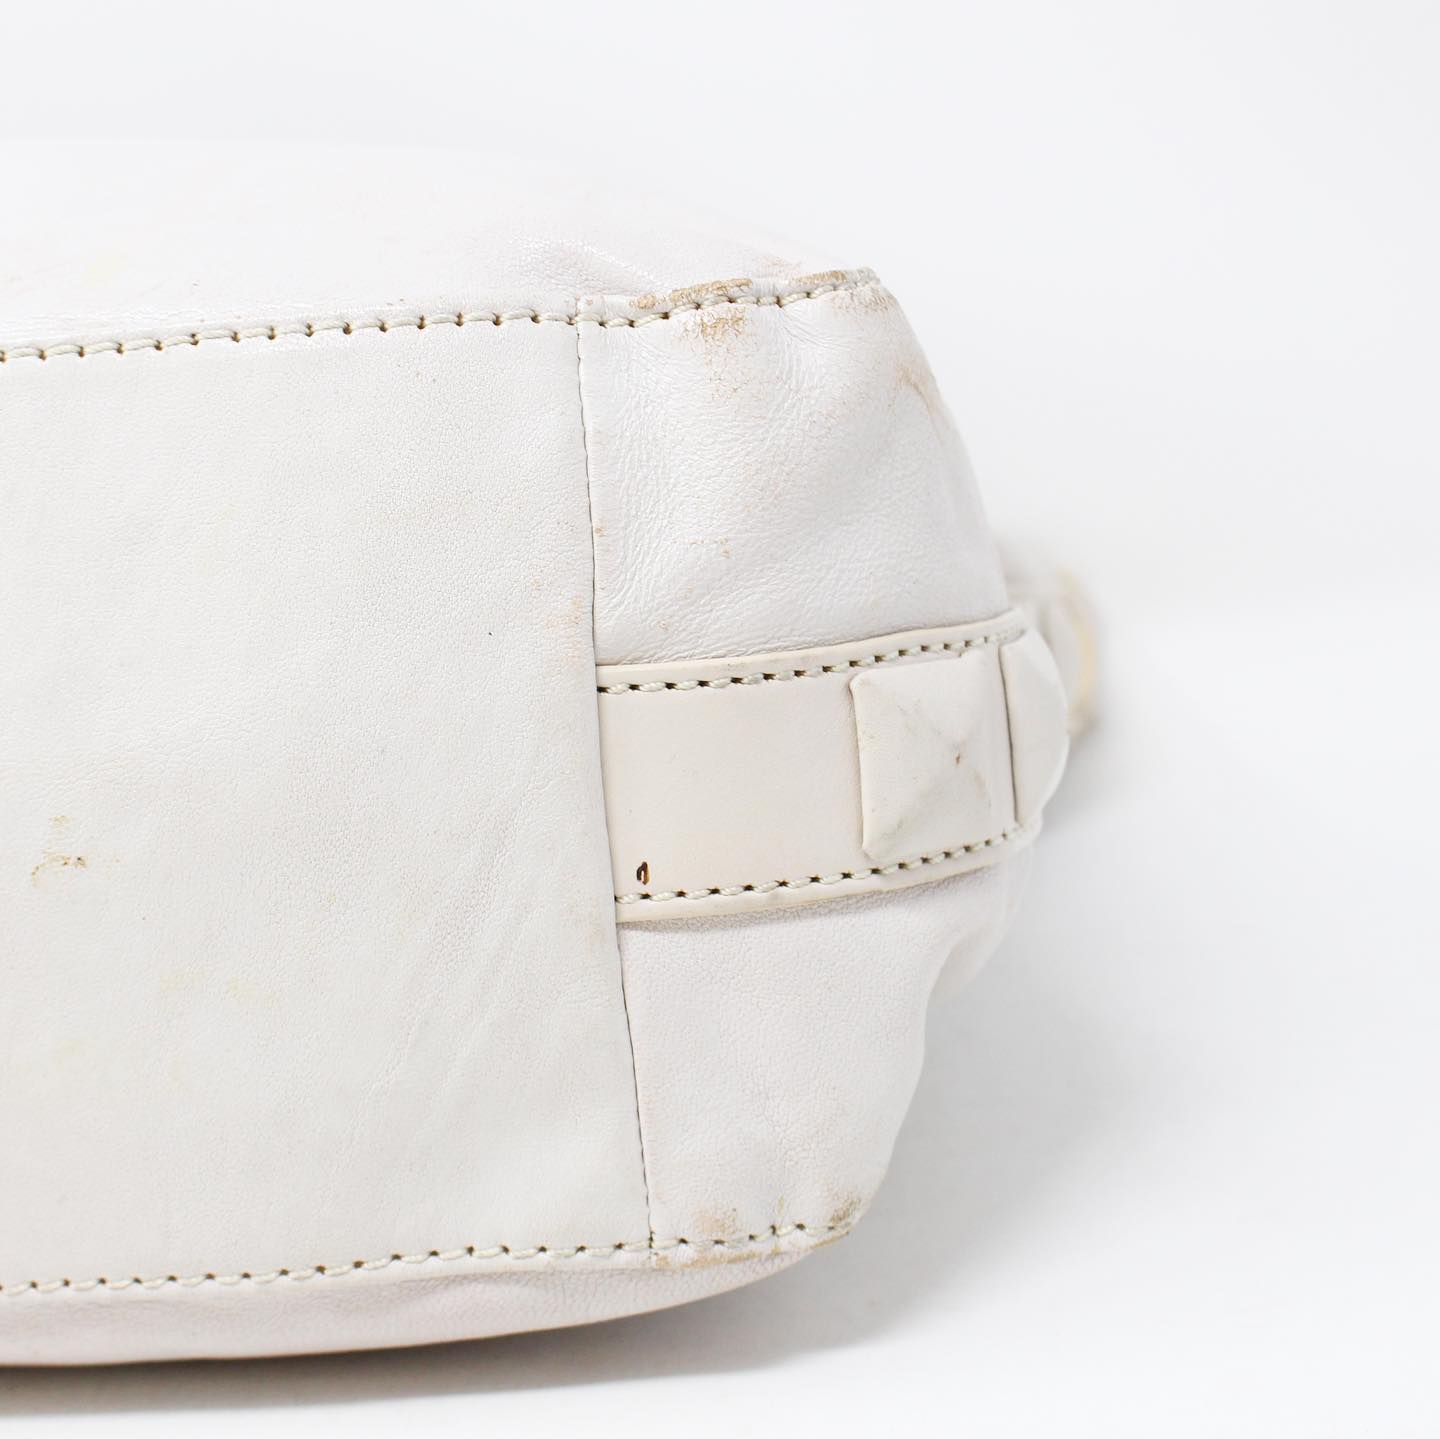 MICHAEL KORS White Leather Handbag #19045 – ALL YOUR BLISS